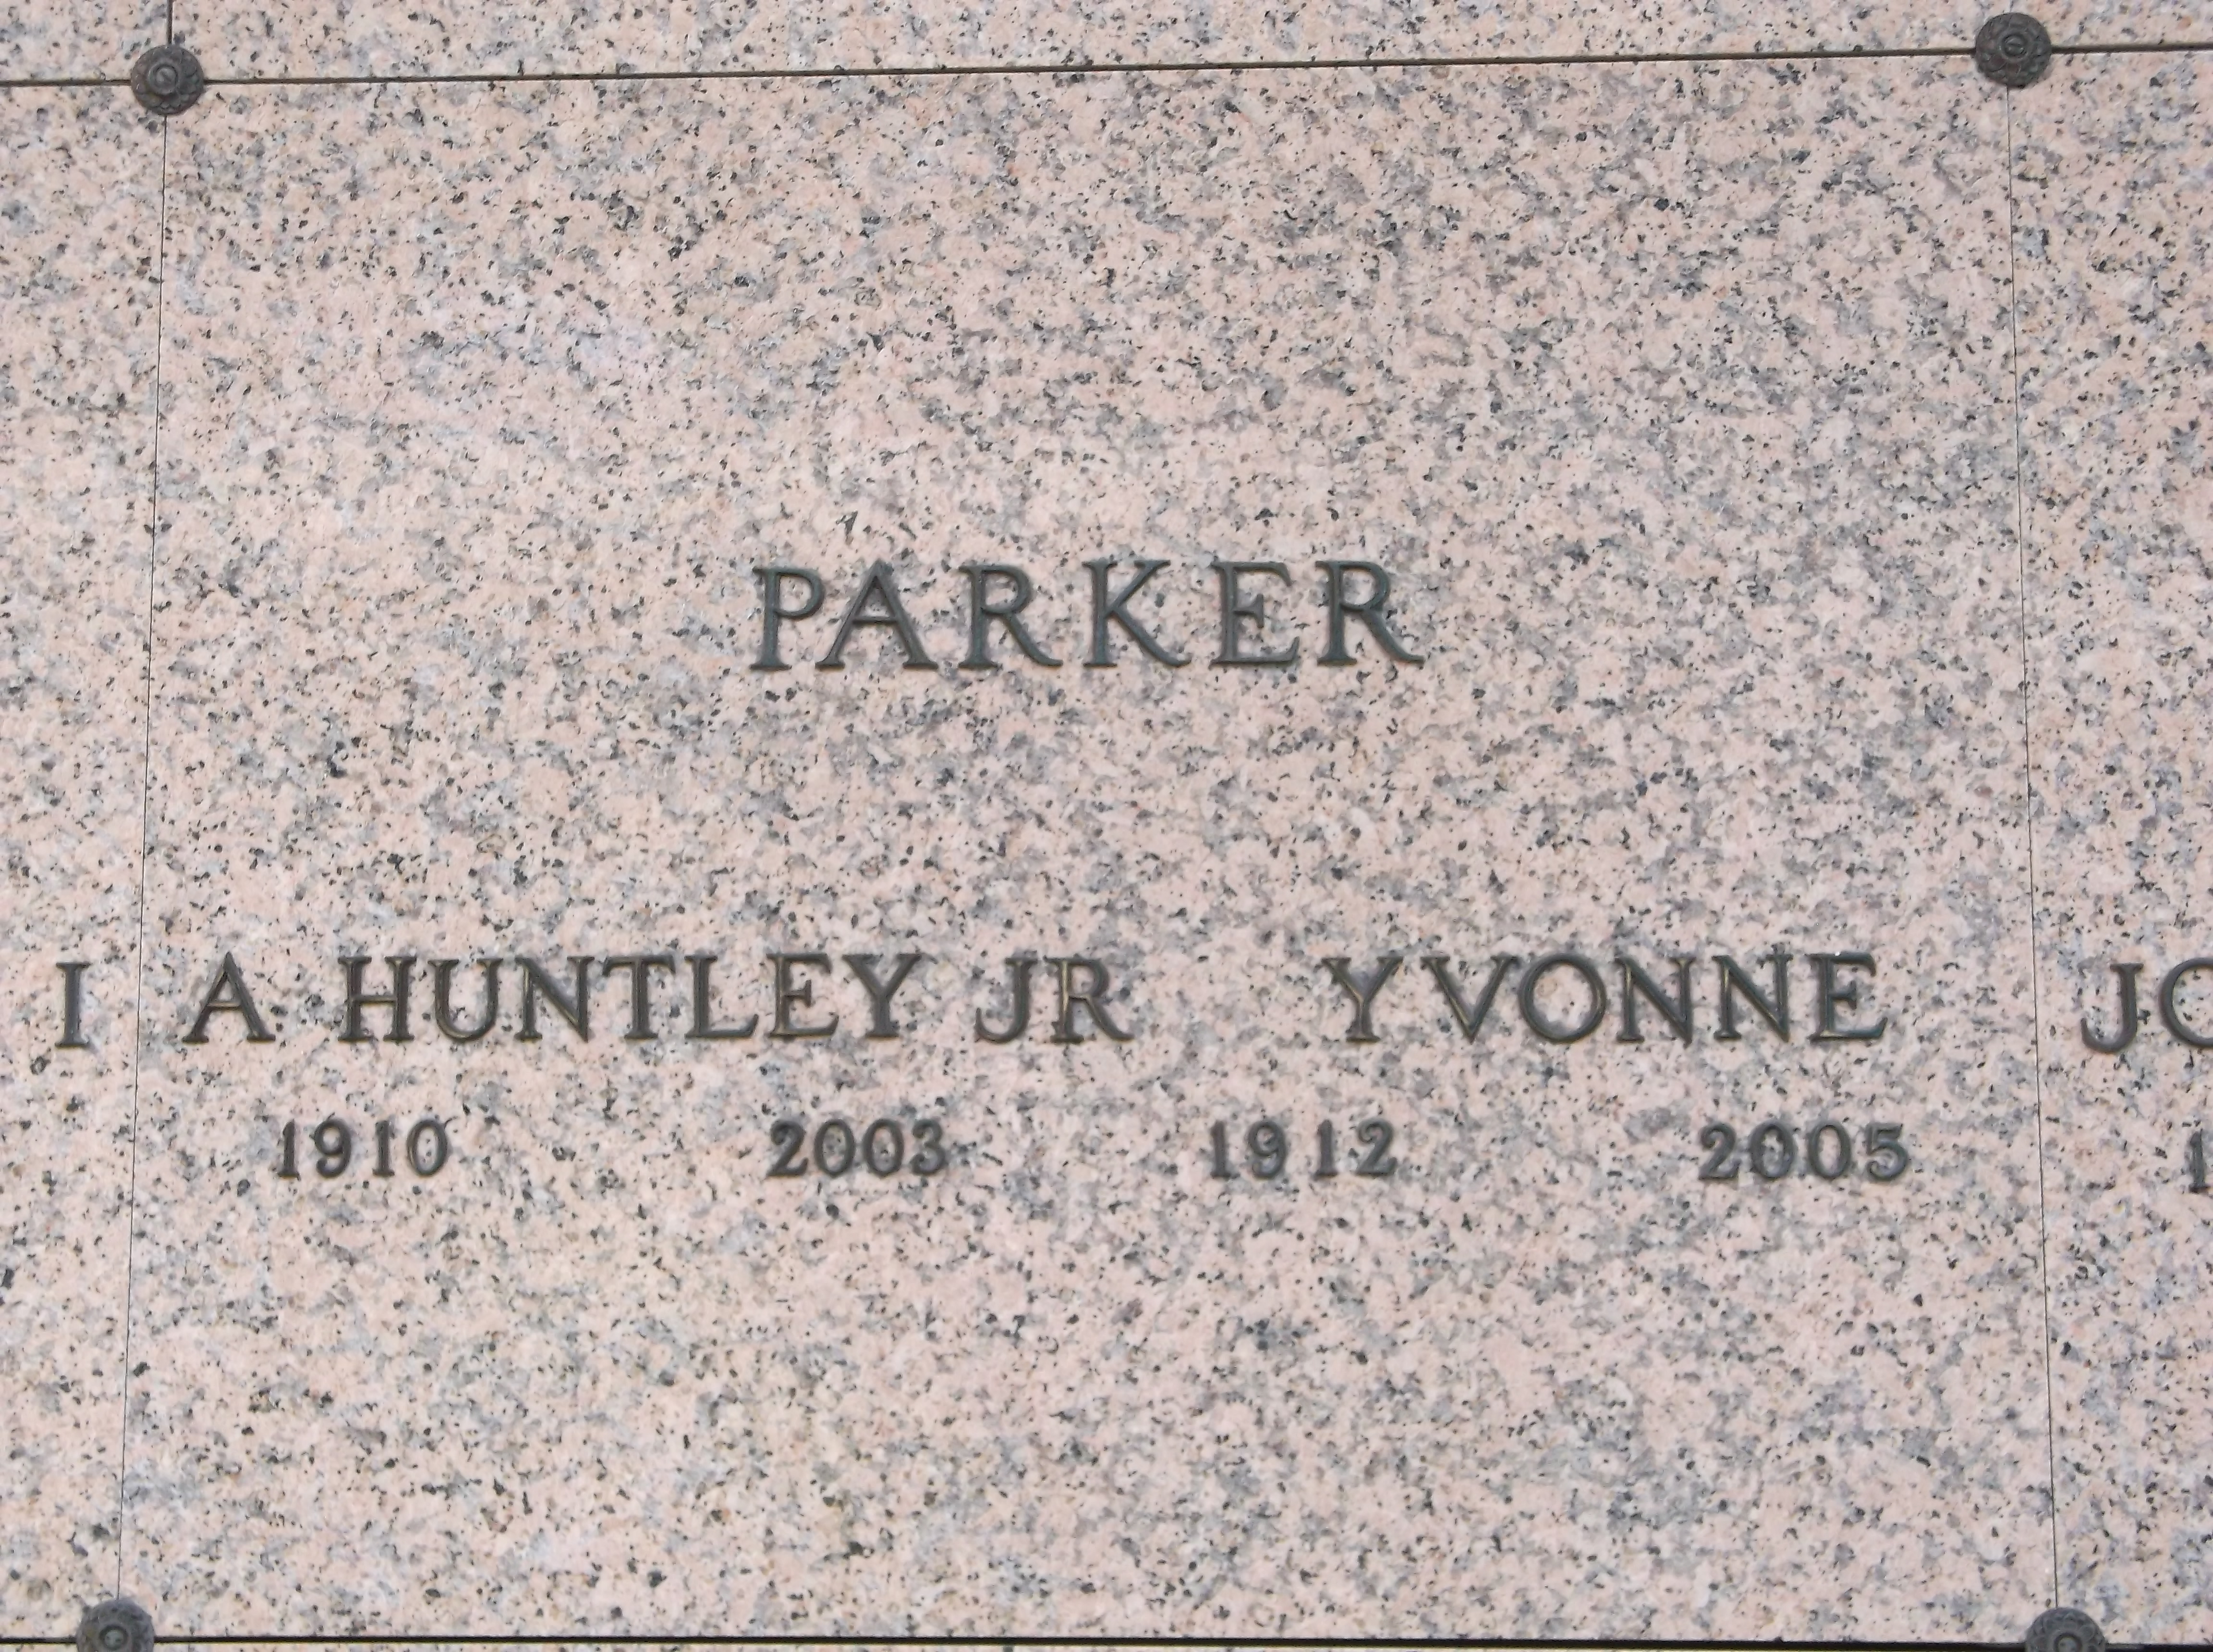 A Huntley Parker, Jr